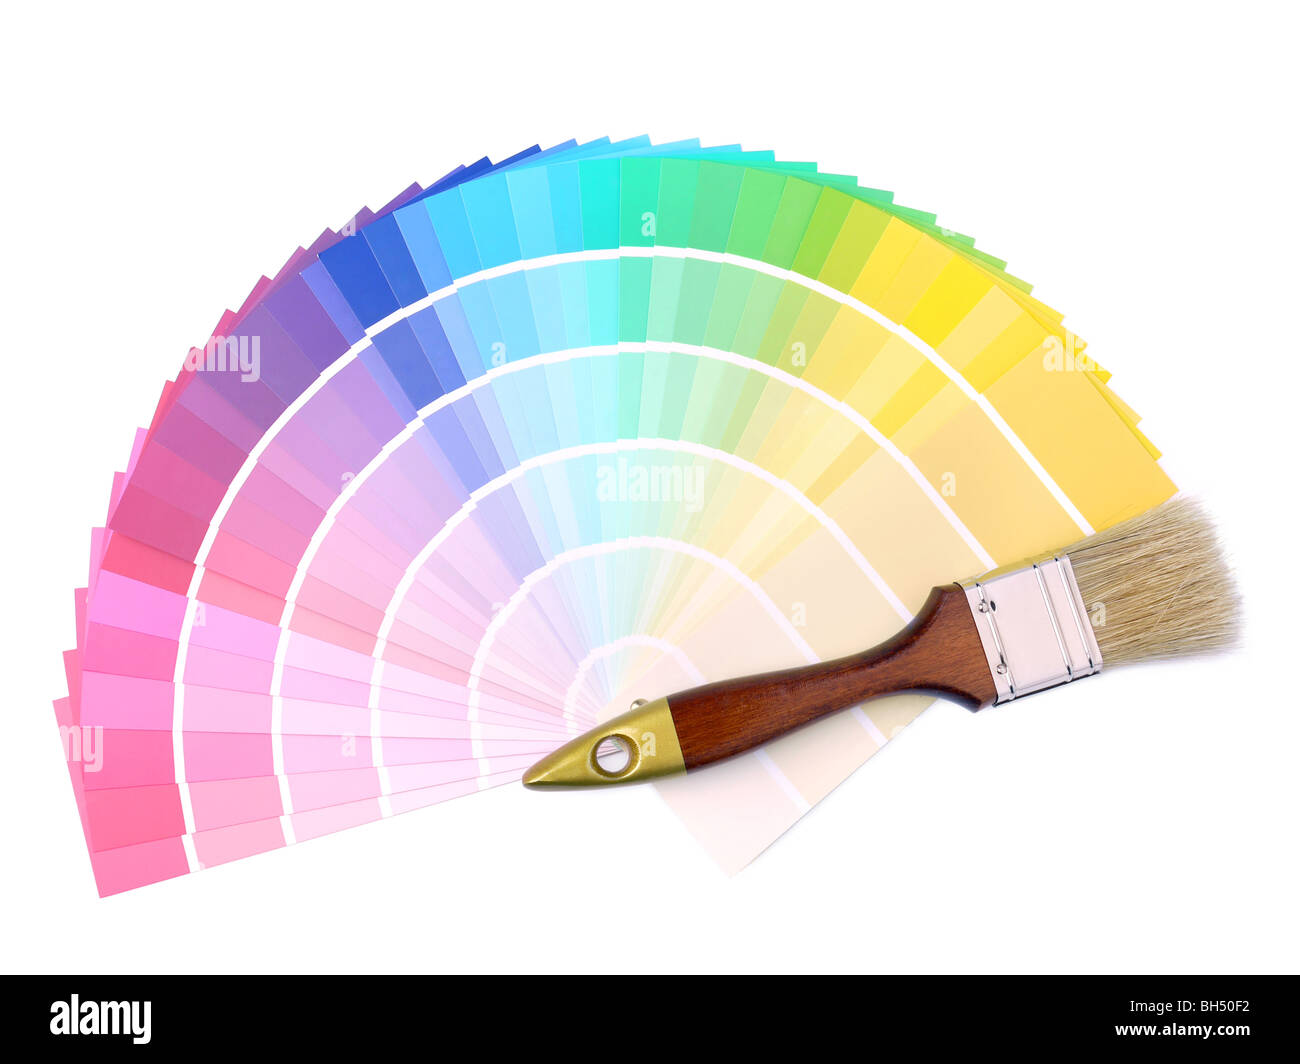 El cepillo de la pintura en la matriz de diferentes muestras de colores de pintura Foto de stock